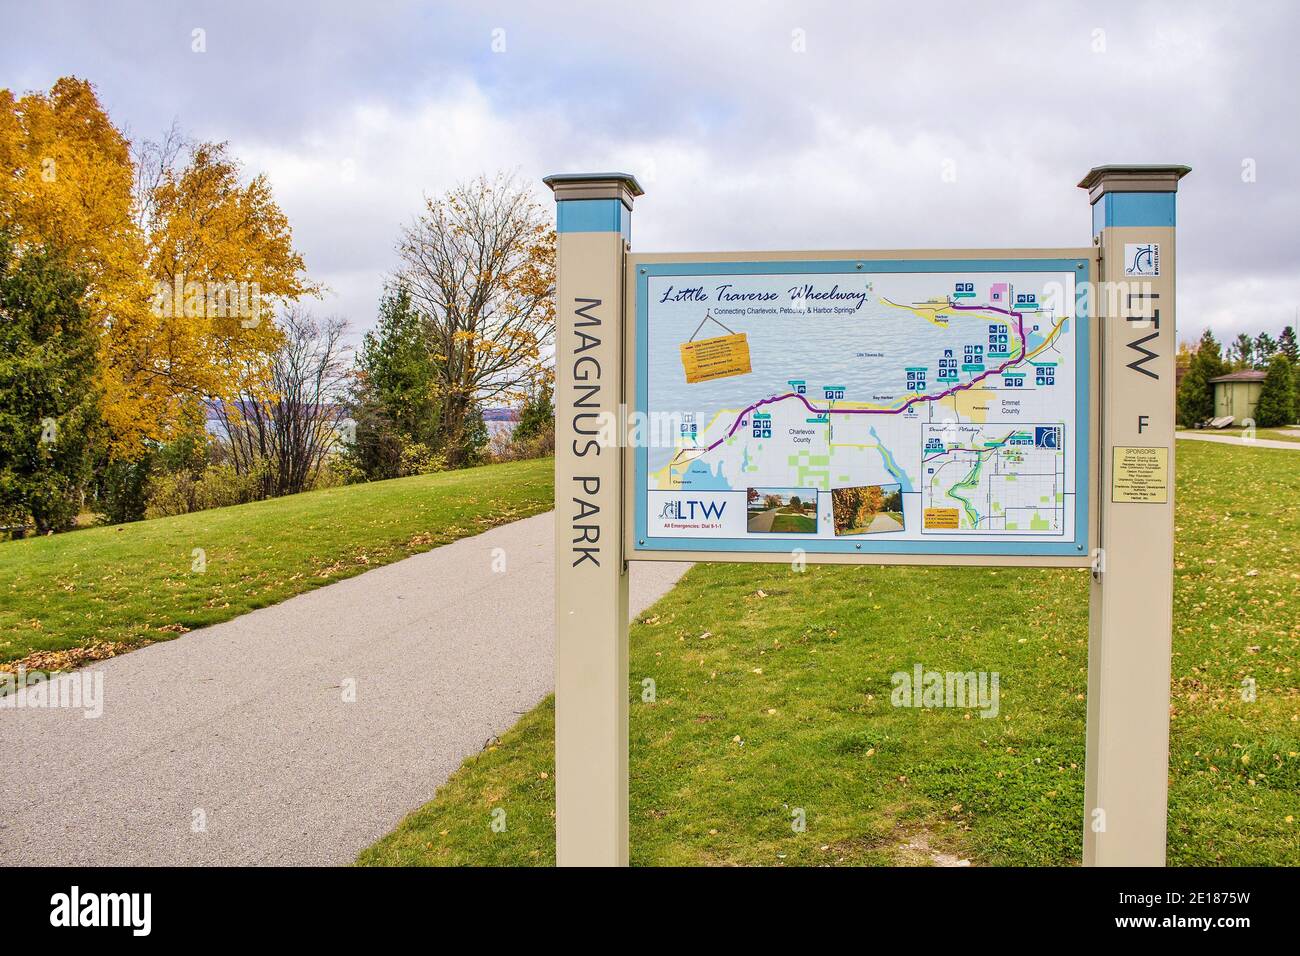 Petoskey, Michigan, USA - 29. Oktober 2014: Trailhead und Karte für den Little Traverse Wheelway in Petoskey. Stockfoto